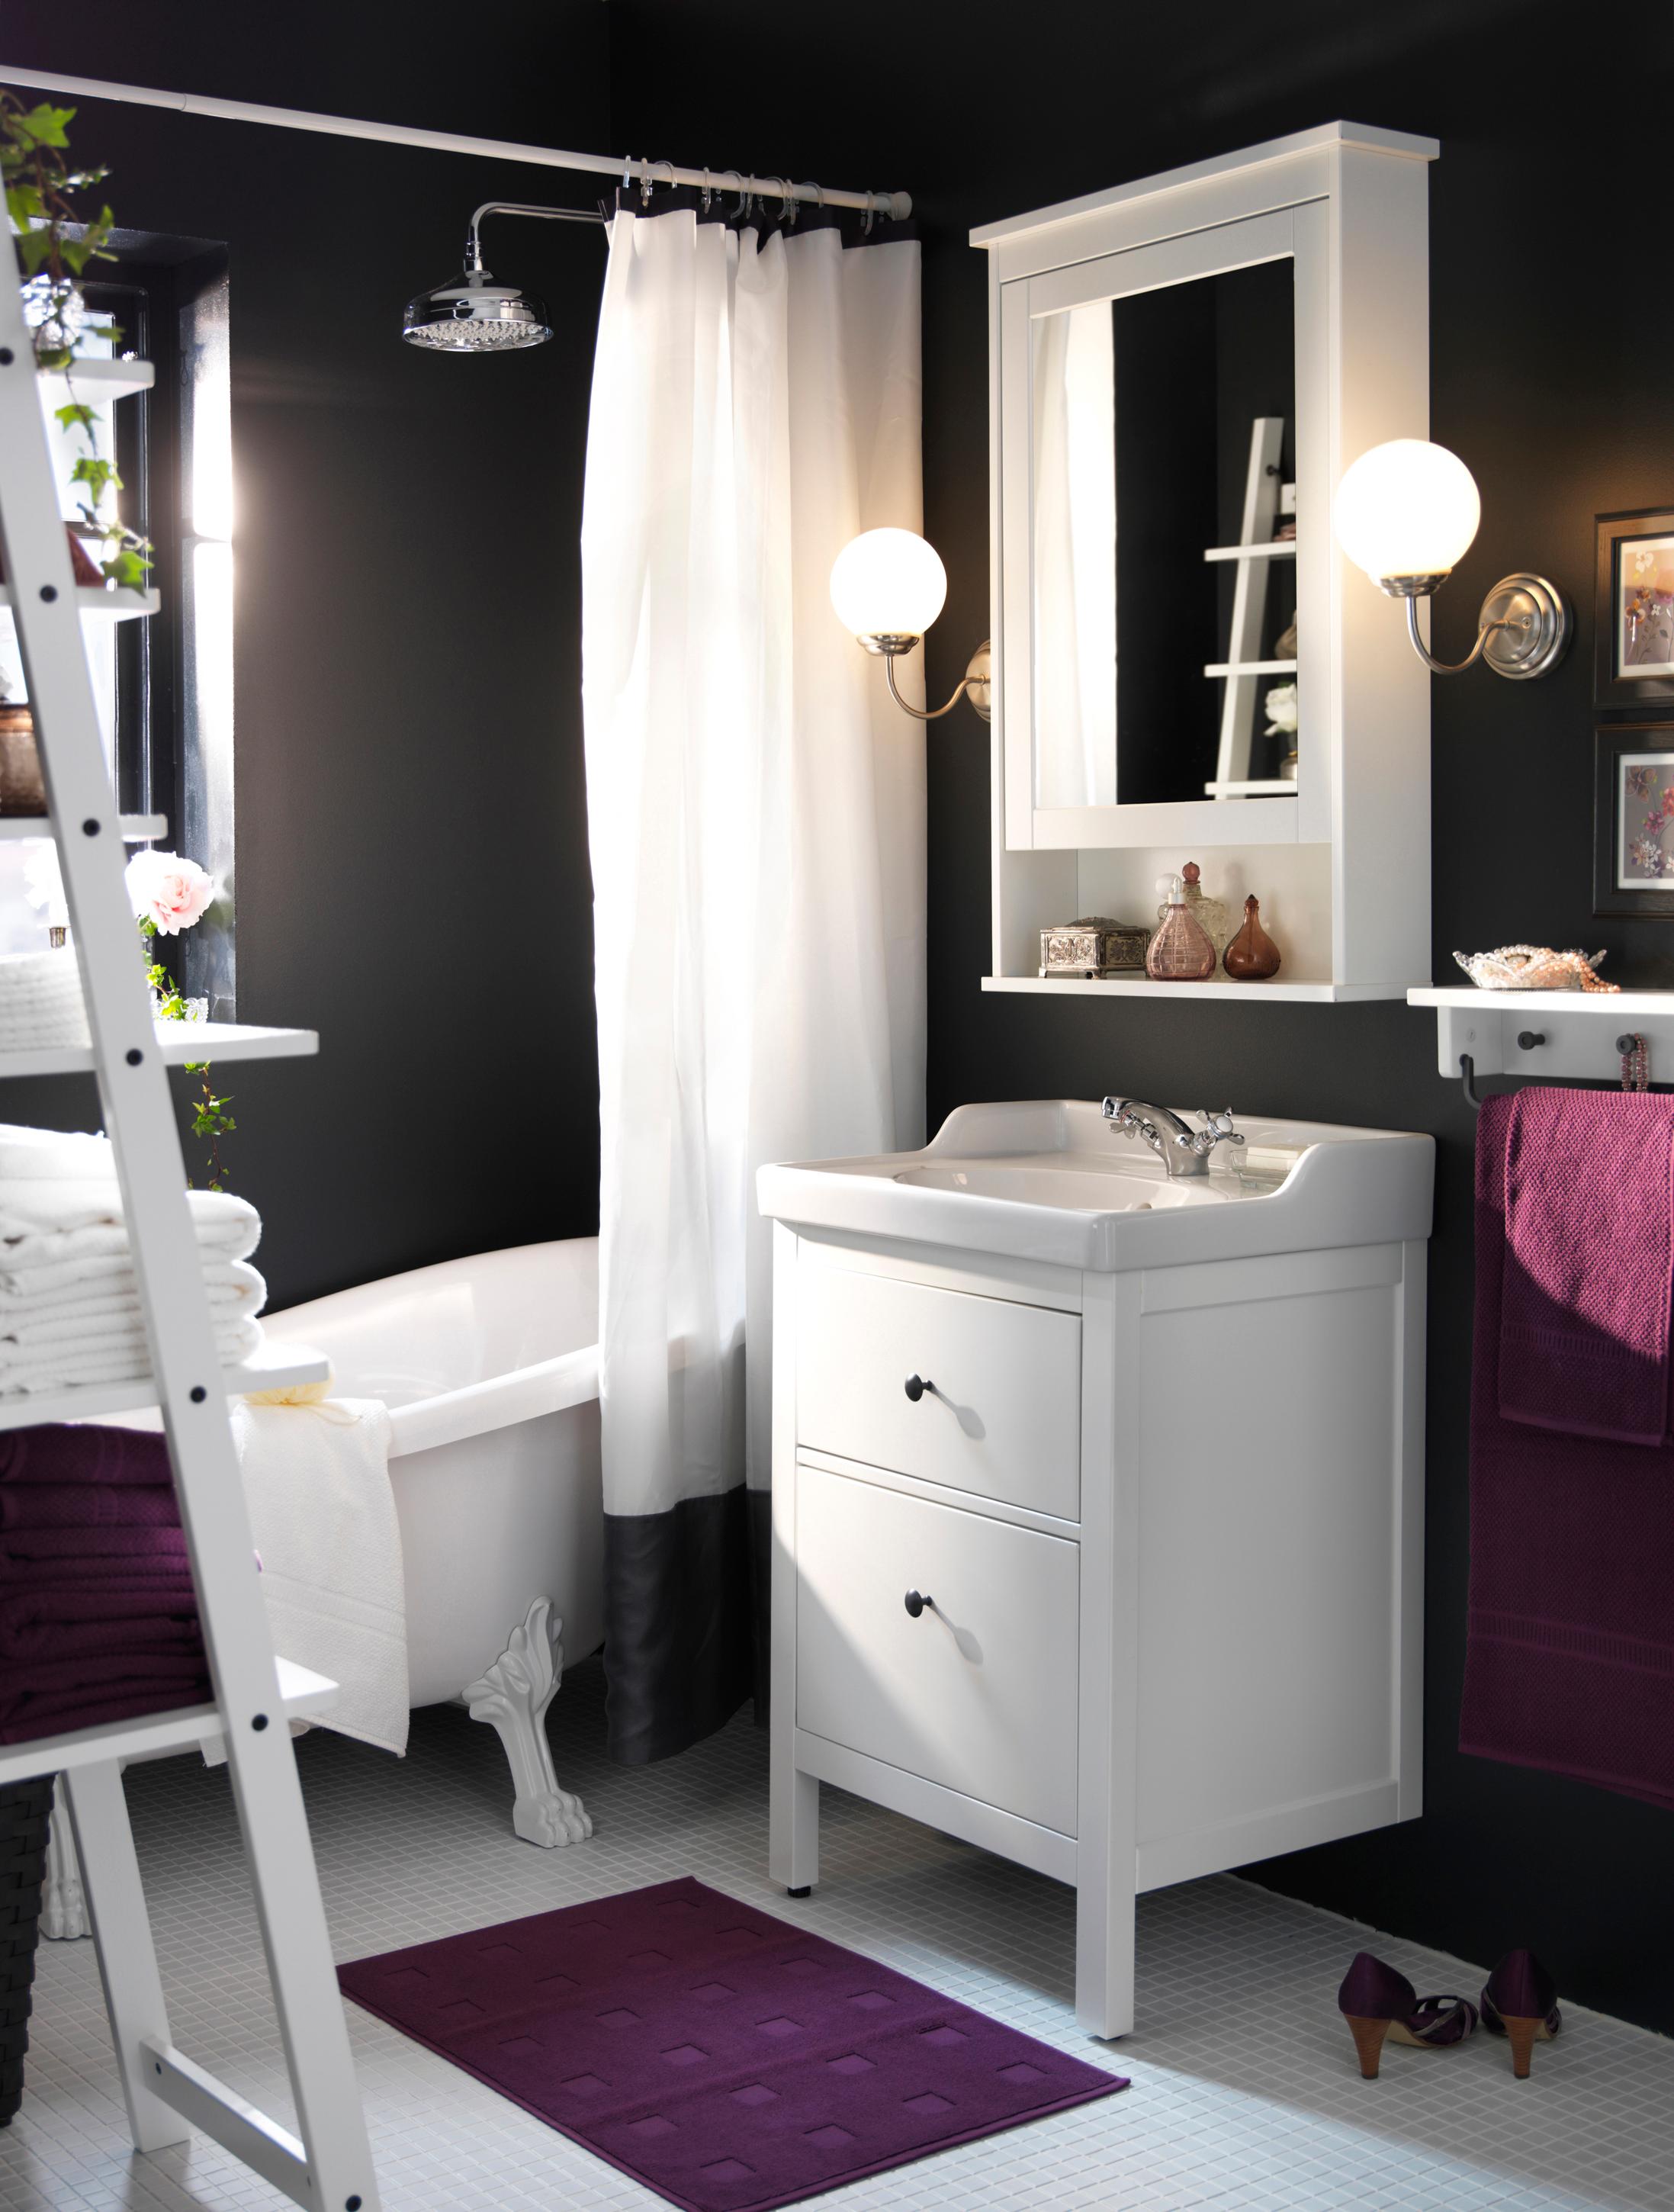 Badezimmergestaltung in Anthrazit, Violett und Weiß #wandfarbe #badewanne #waschtisch #ikea #handtuchhalter #weißerbodenbelag #spiegelschrank #badezimmereinrichtung #anthrazitwandfarbe ©Inter IKEA Systems B.V.